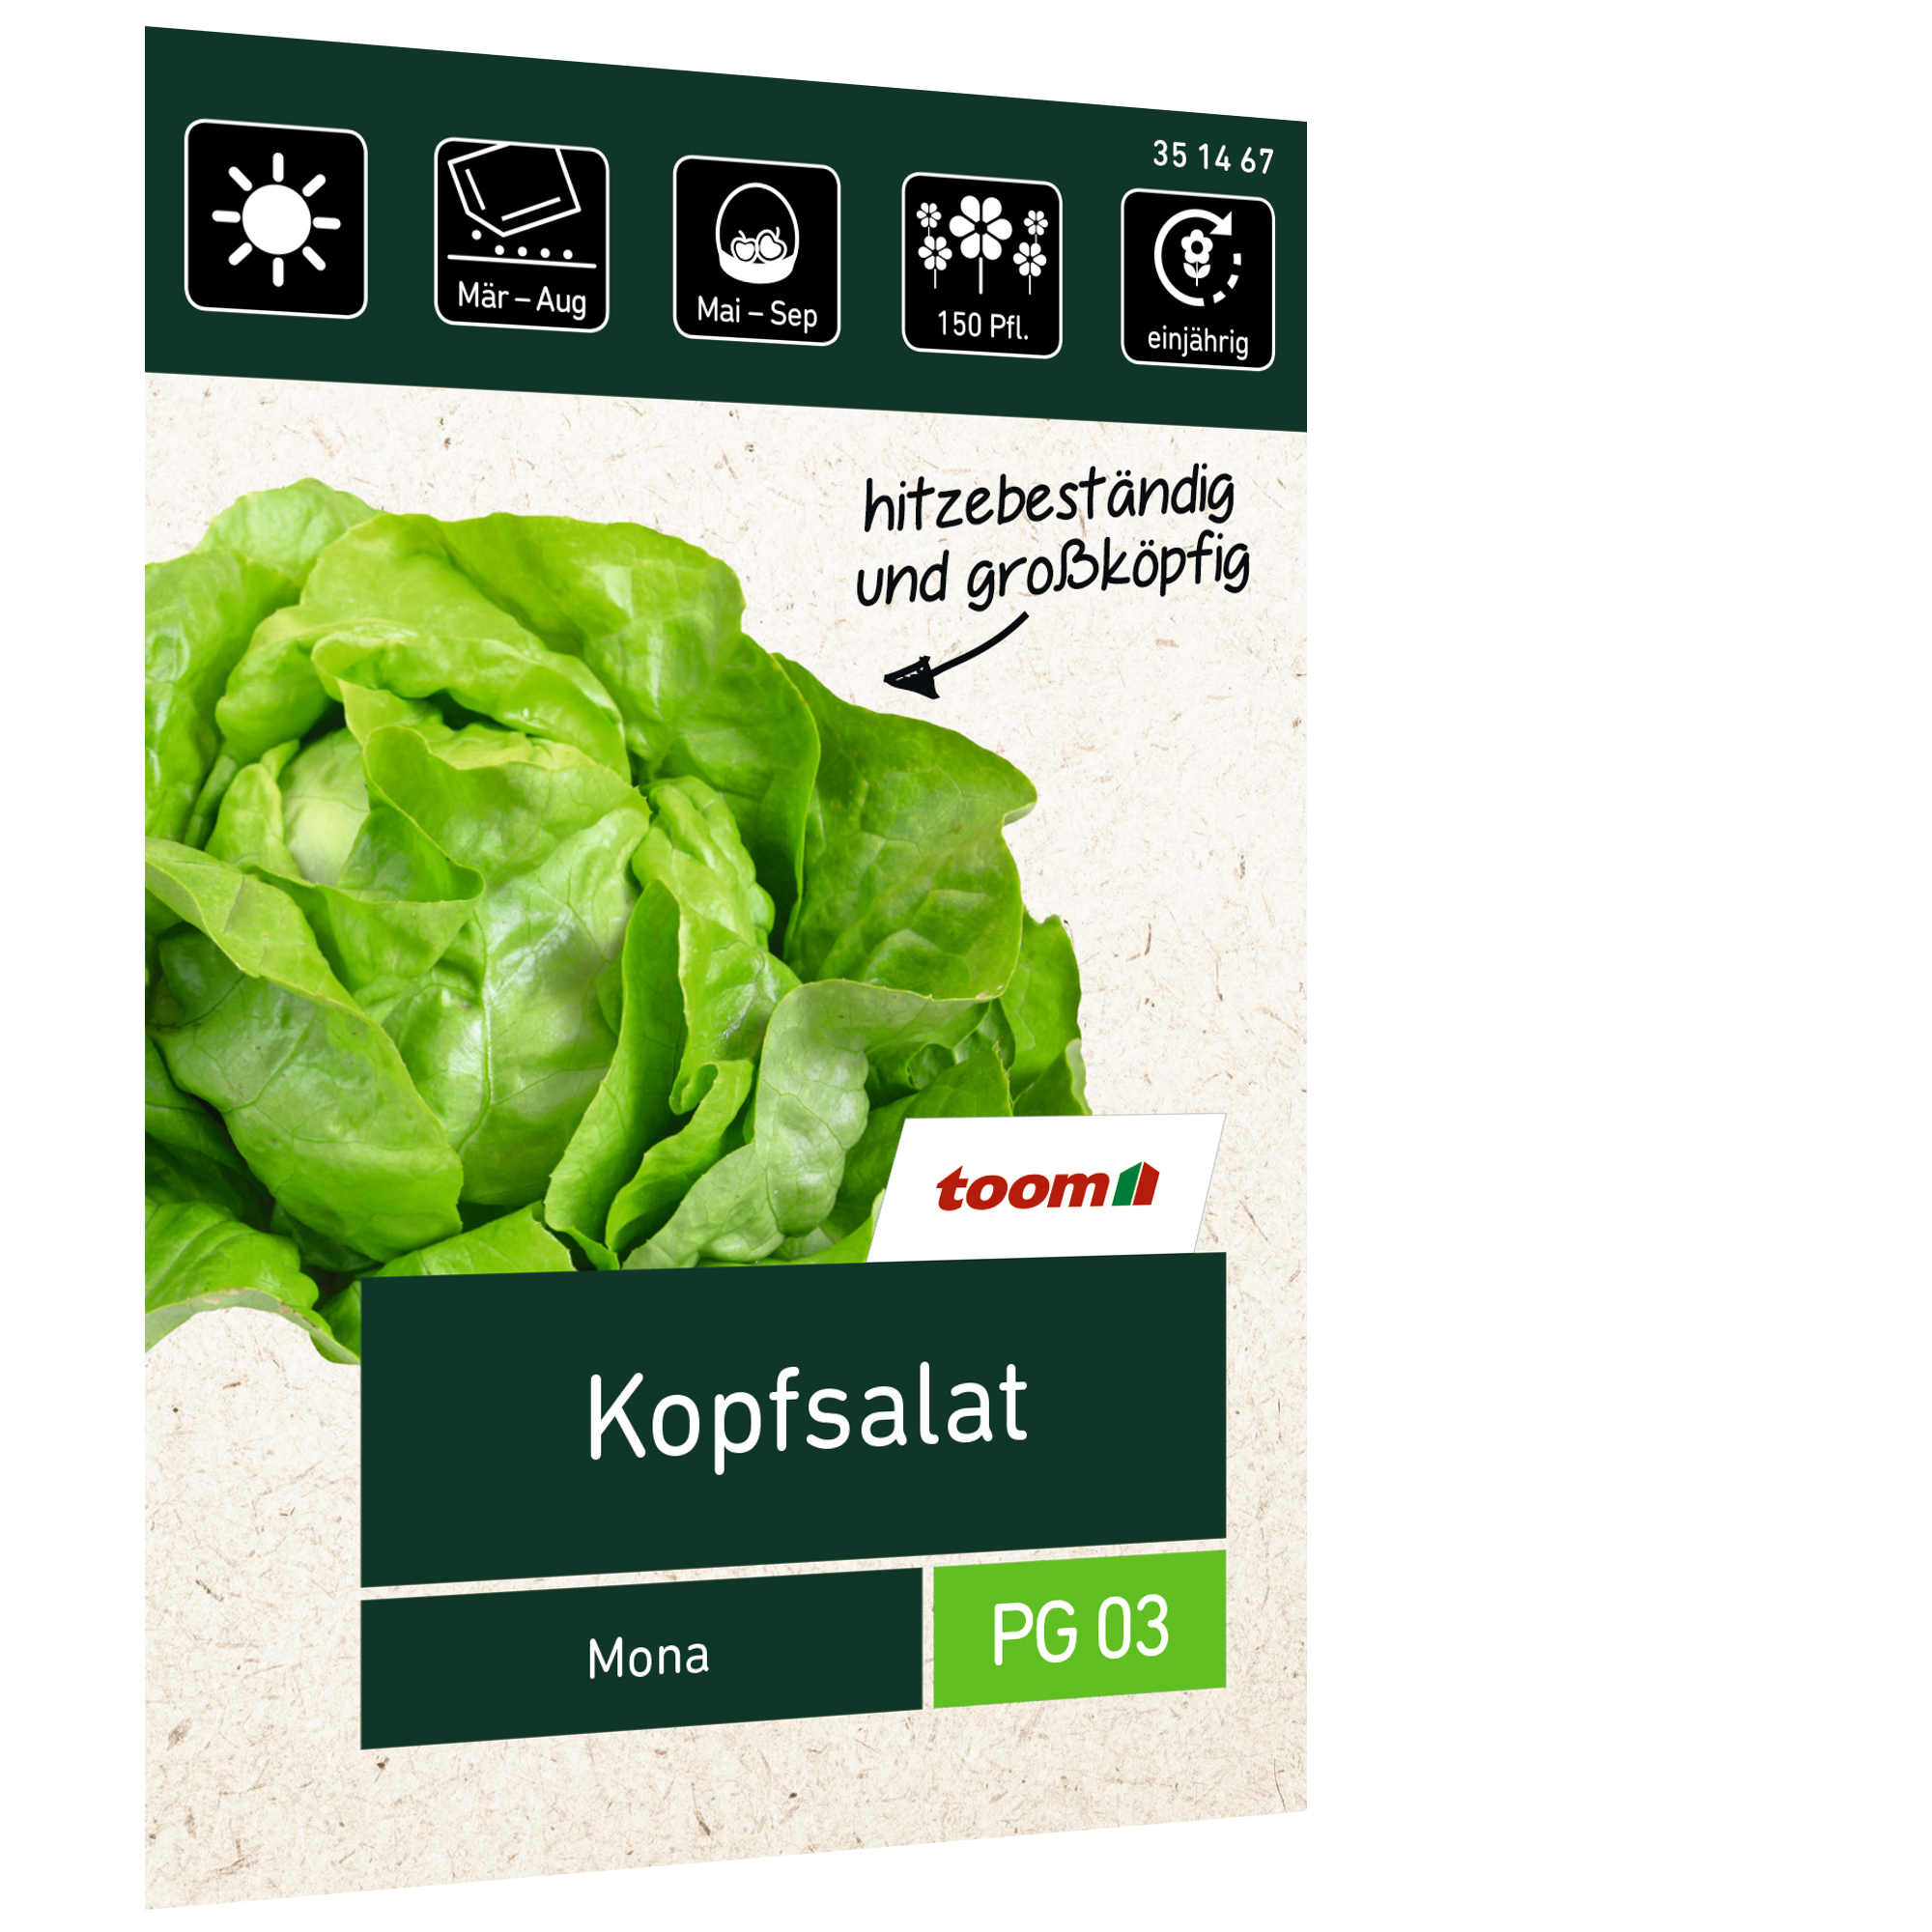 Kopfsalat 'Mona' + product picture